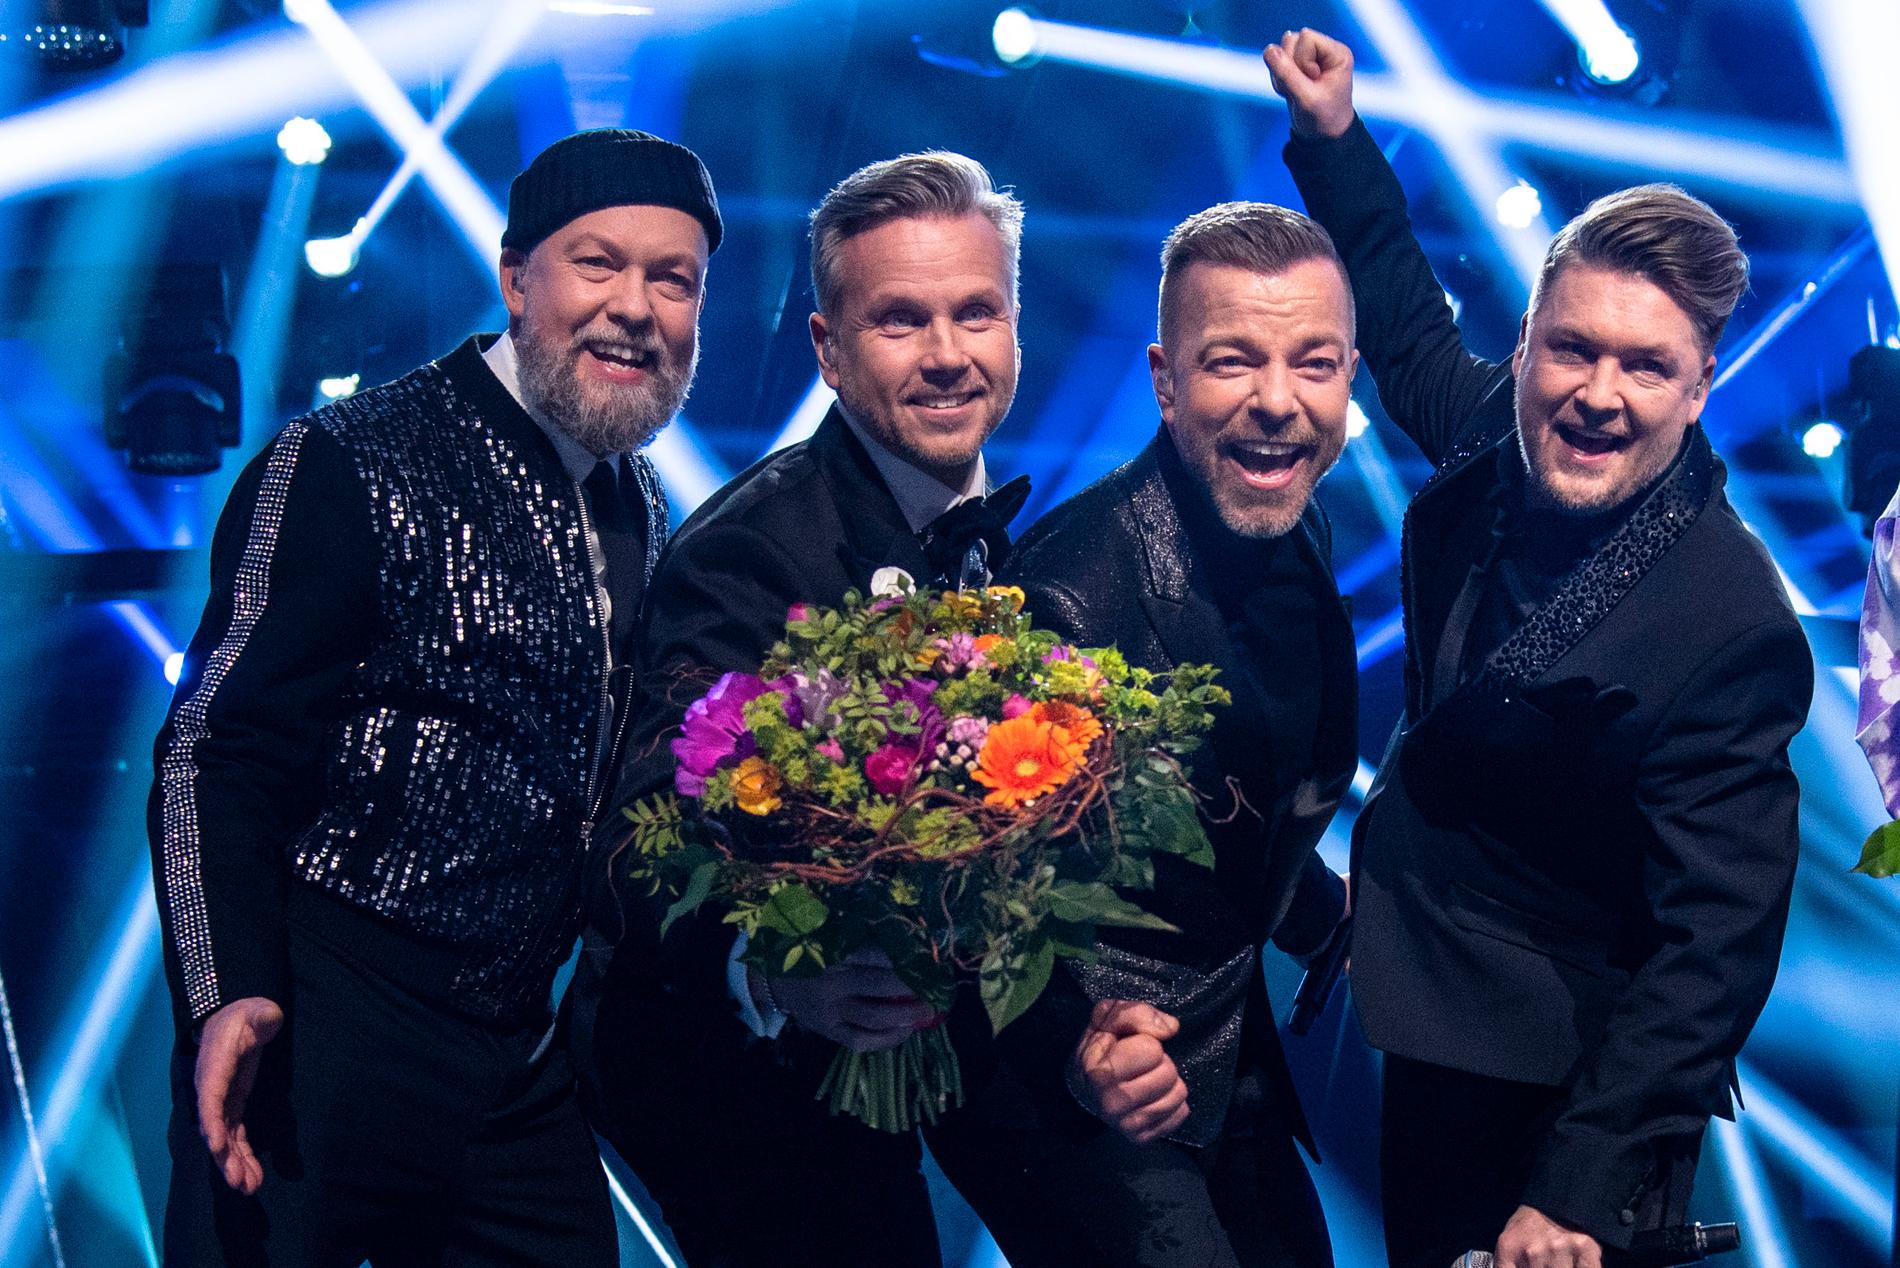 Arvingarna i Melodifestivalen 2020